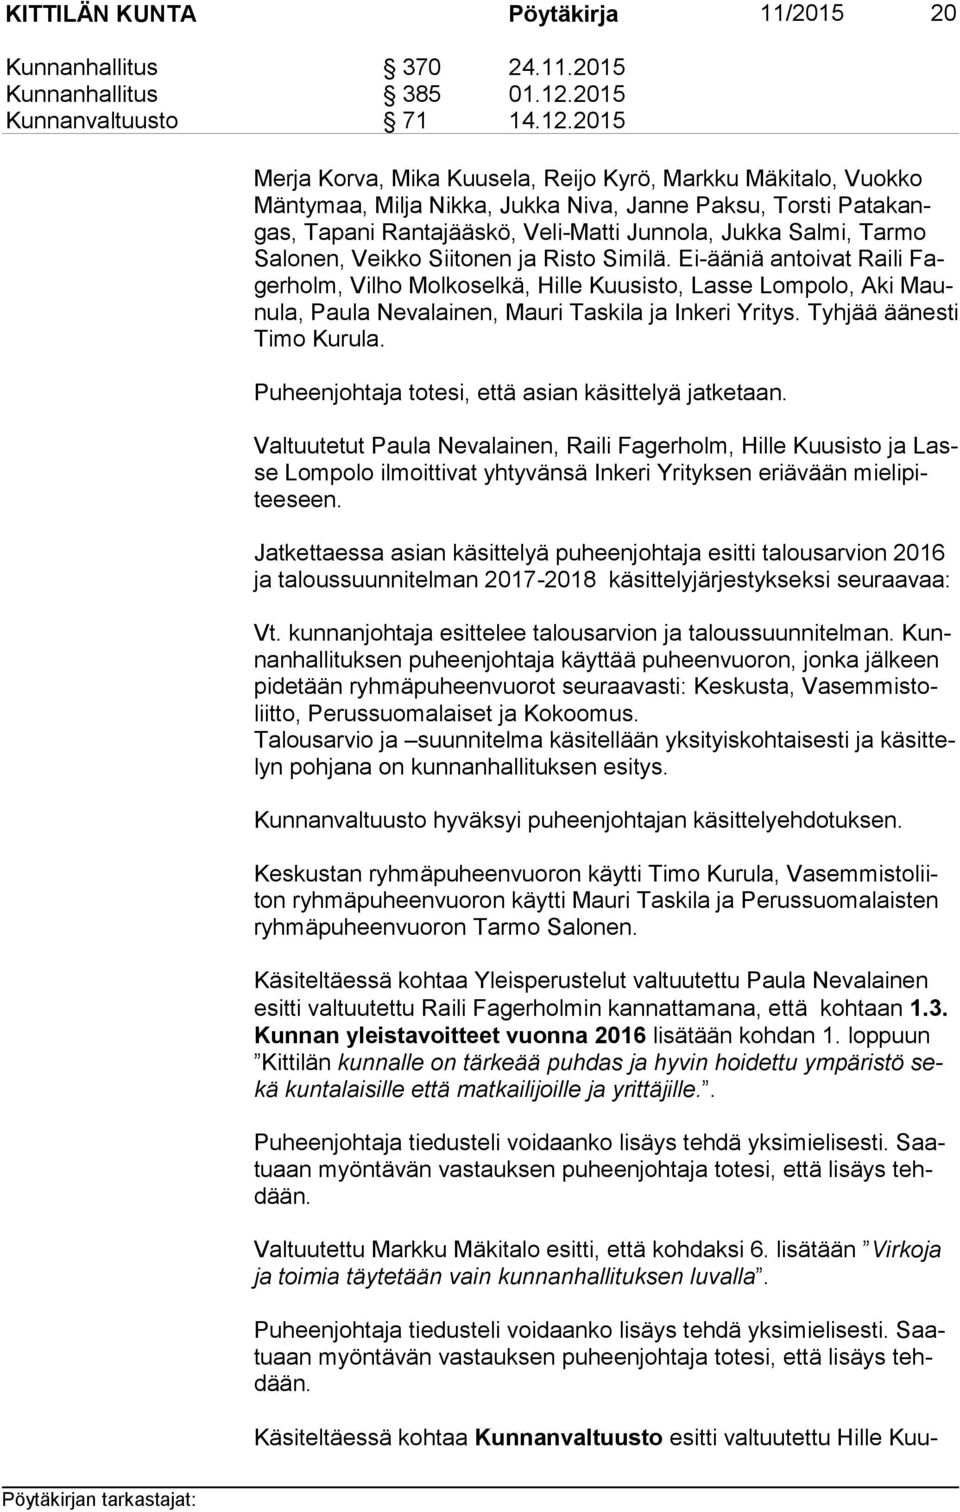 Ei-ääniä antoivat Raili Fager holm, Vilho Molkoselkä, Hille Kuusisto, Lasse Lompolo, Aki Maunu la, Paula Nevalainen, Mauri Taskila ja Inkeri Yritys. Tyhjää äänesti Ti mo Kurula.